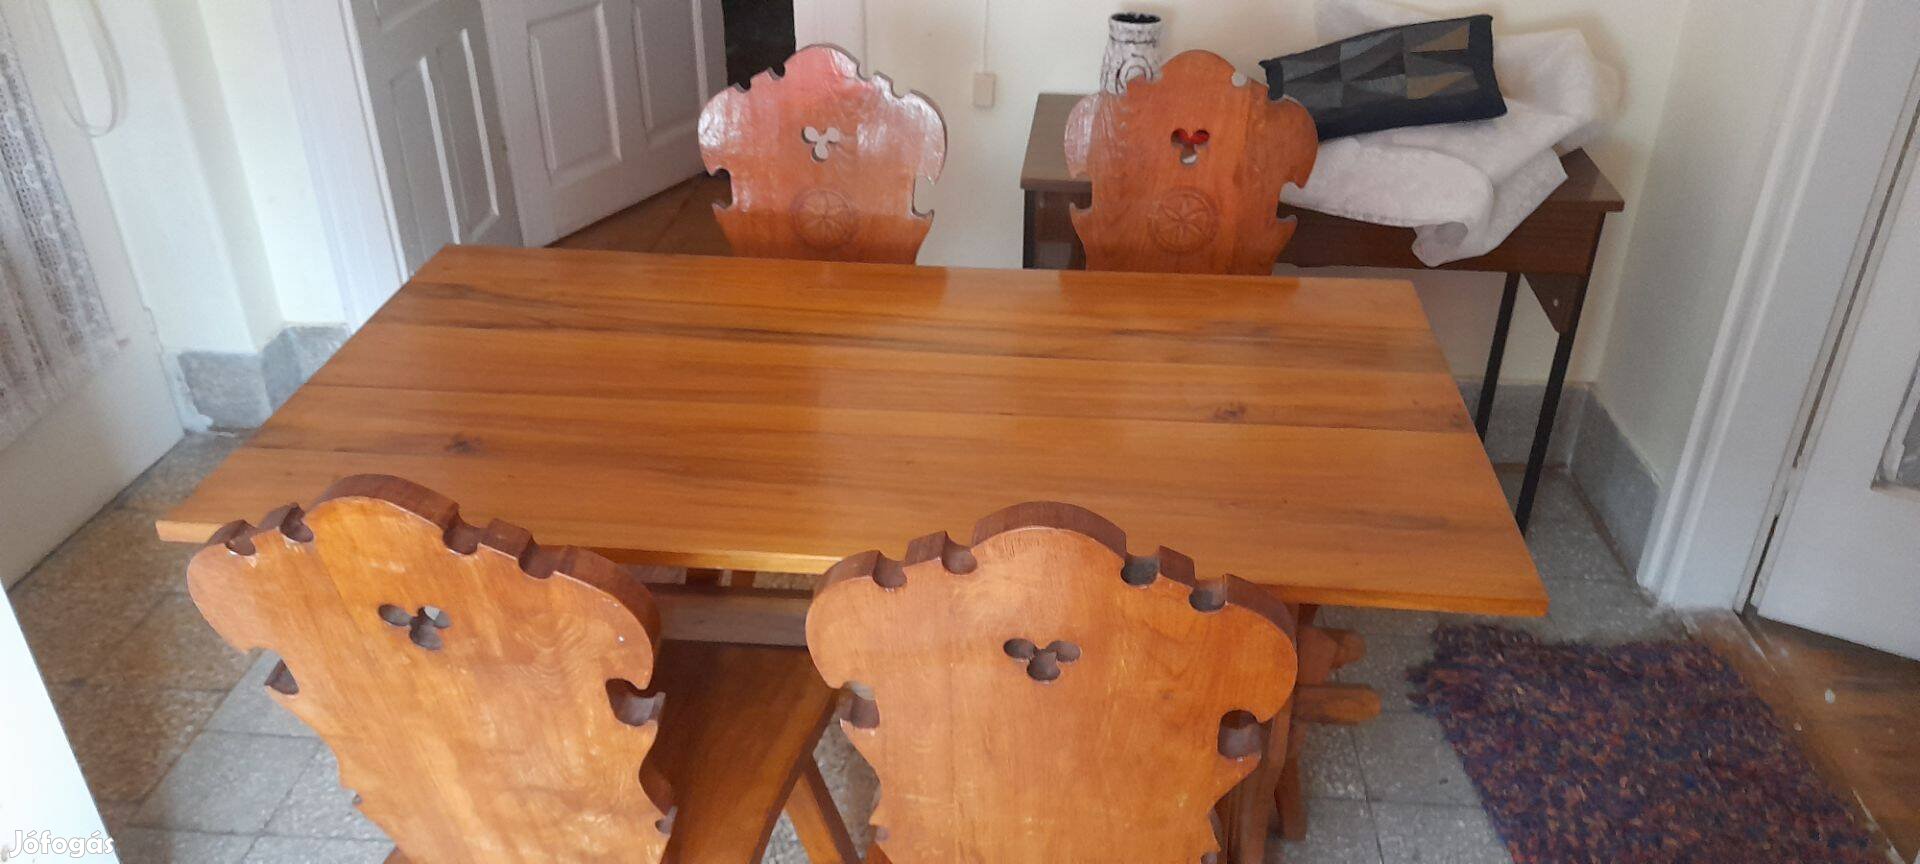 Diófa étkező asztal székekkel